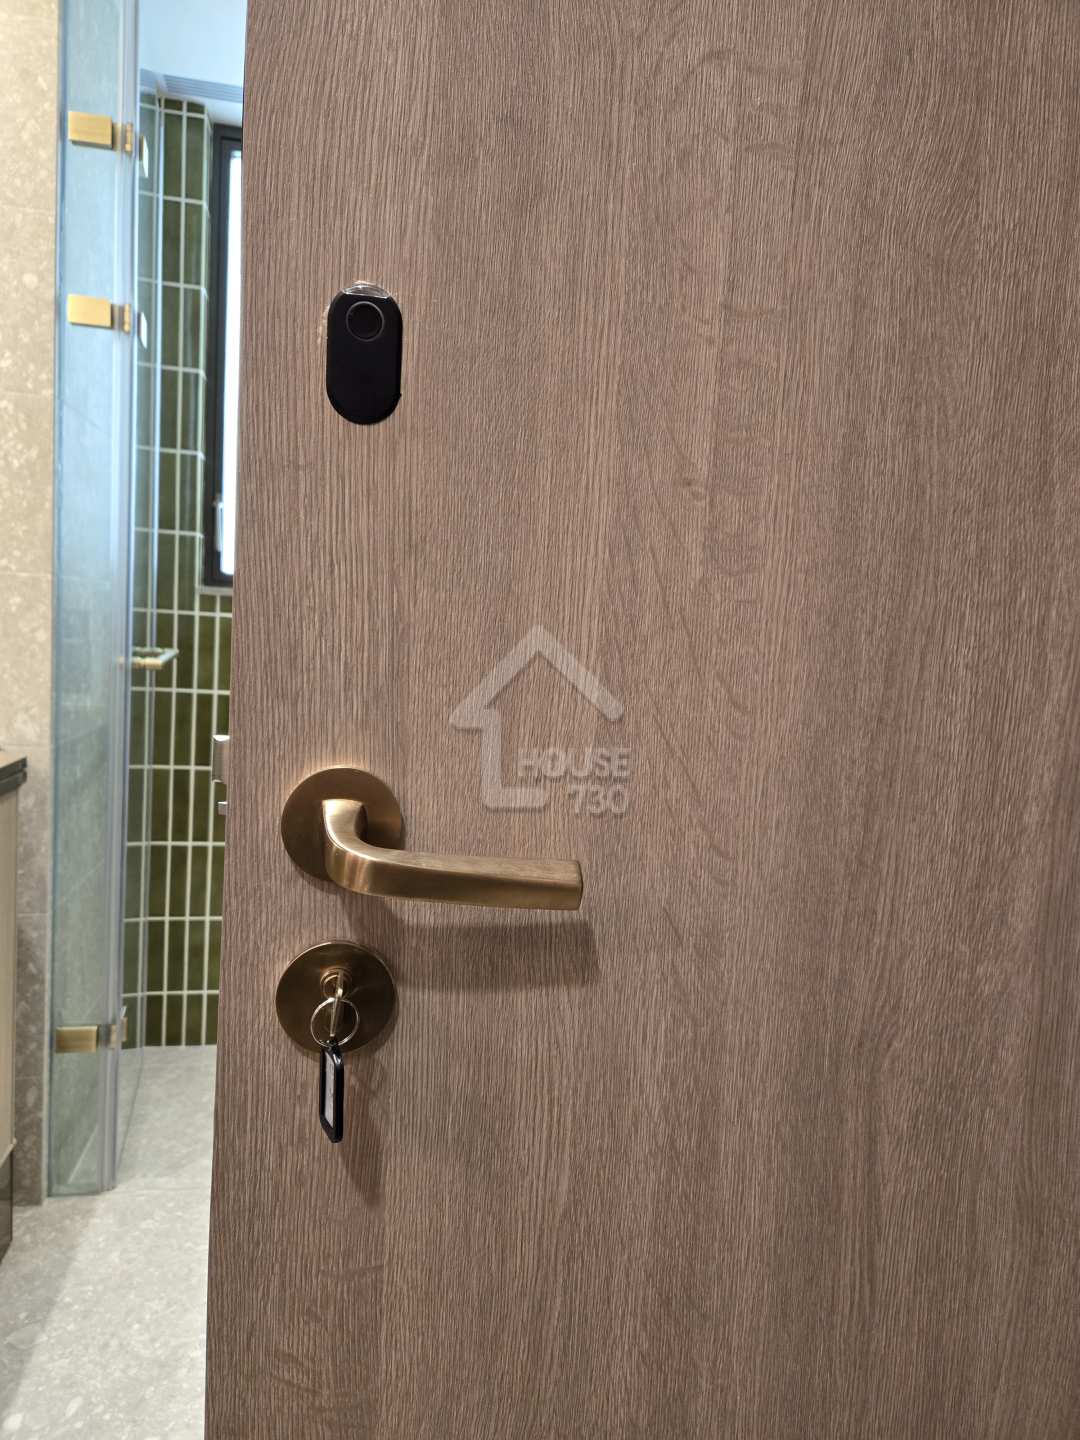 單位大門裝配了有專利的ArtisLock三合一智能門鎖，住戶可以使用指紋掃描、門匙或應用程式解鎖。